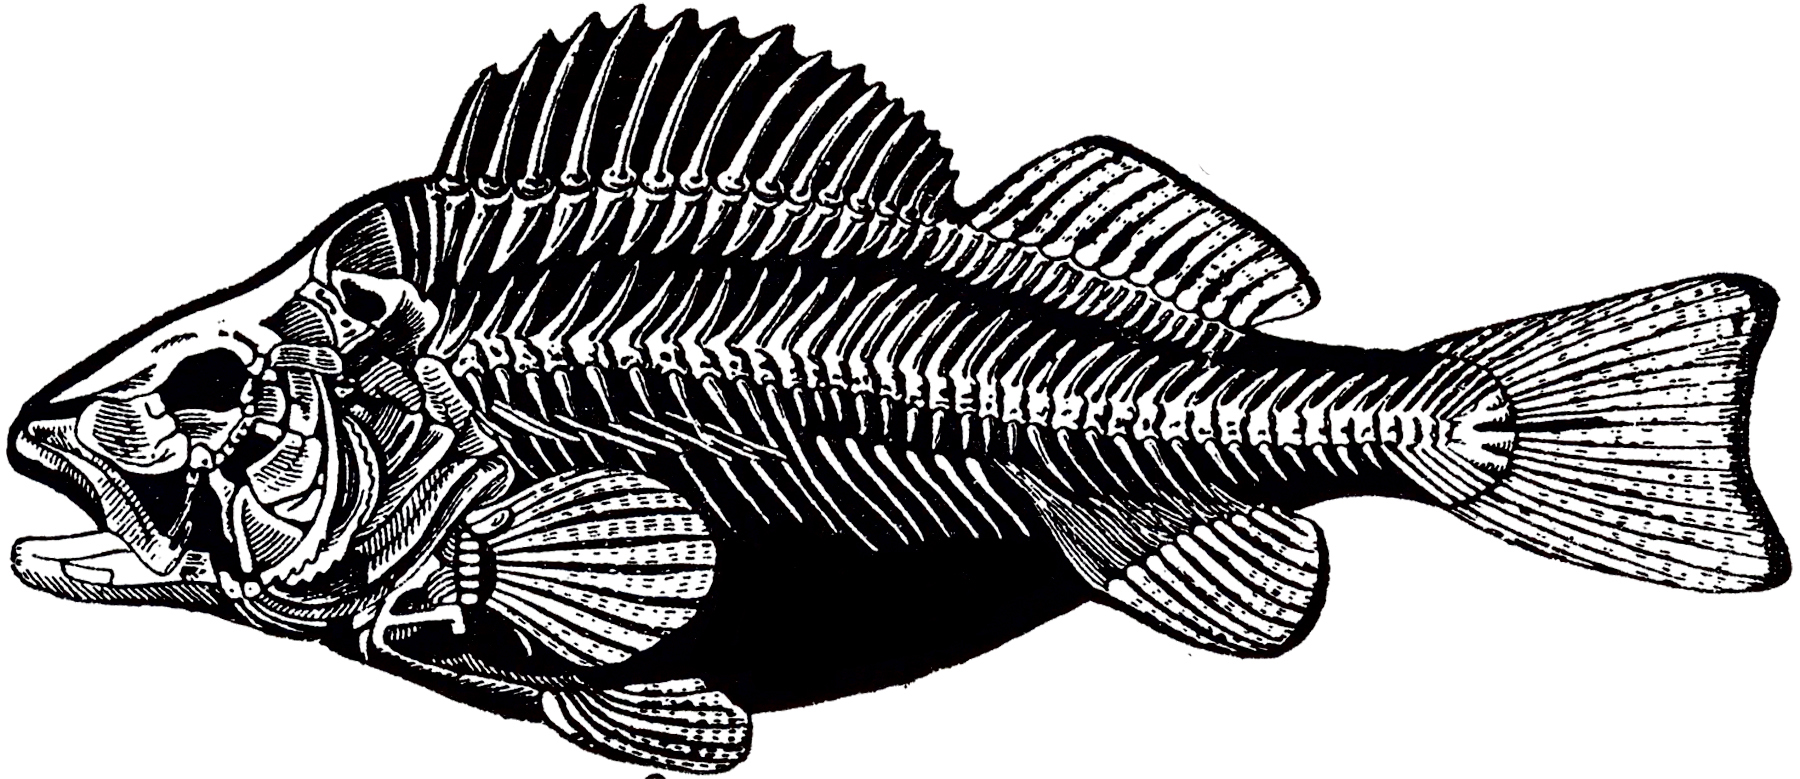 Fish Skeleton Drawing Amazing Sketch